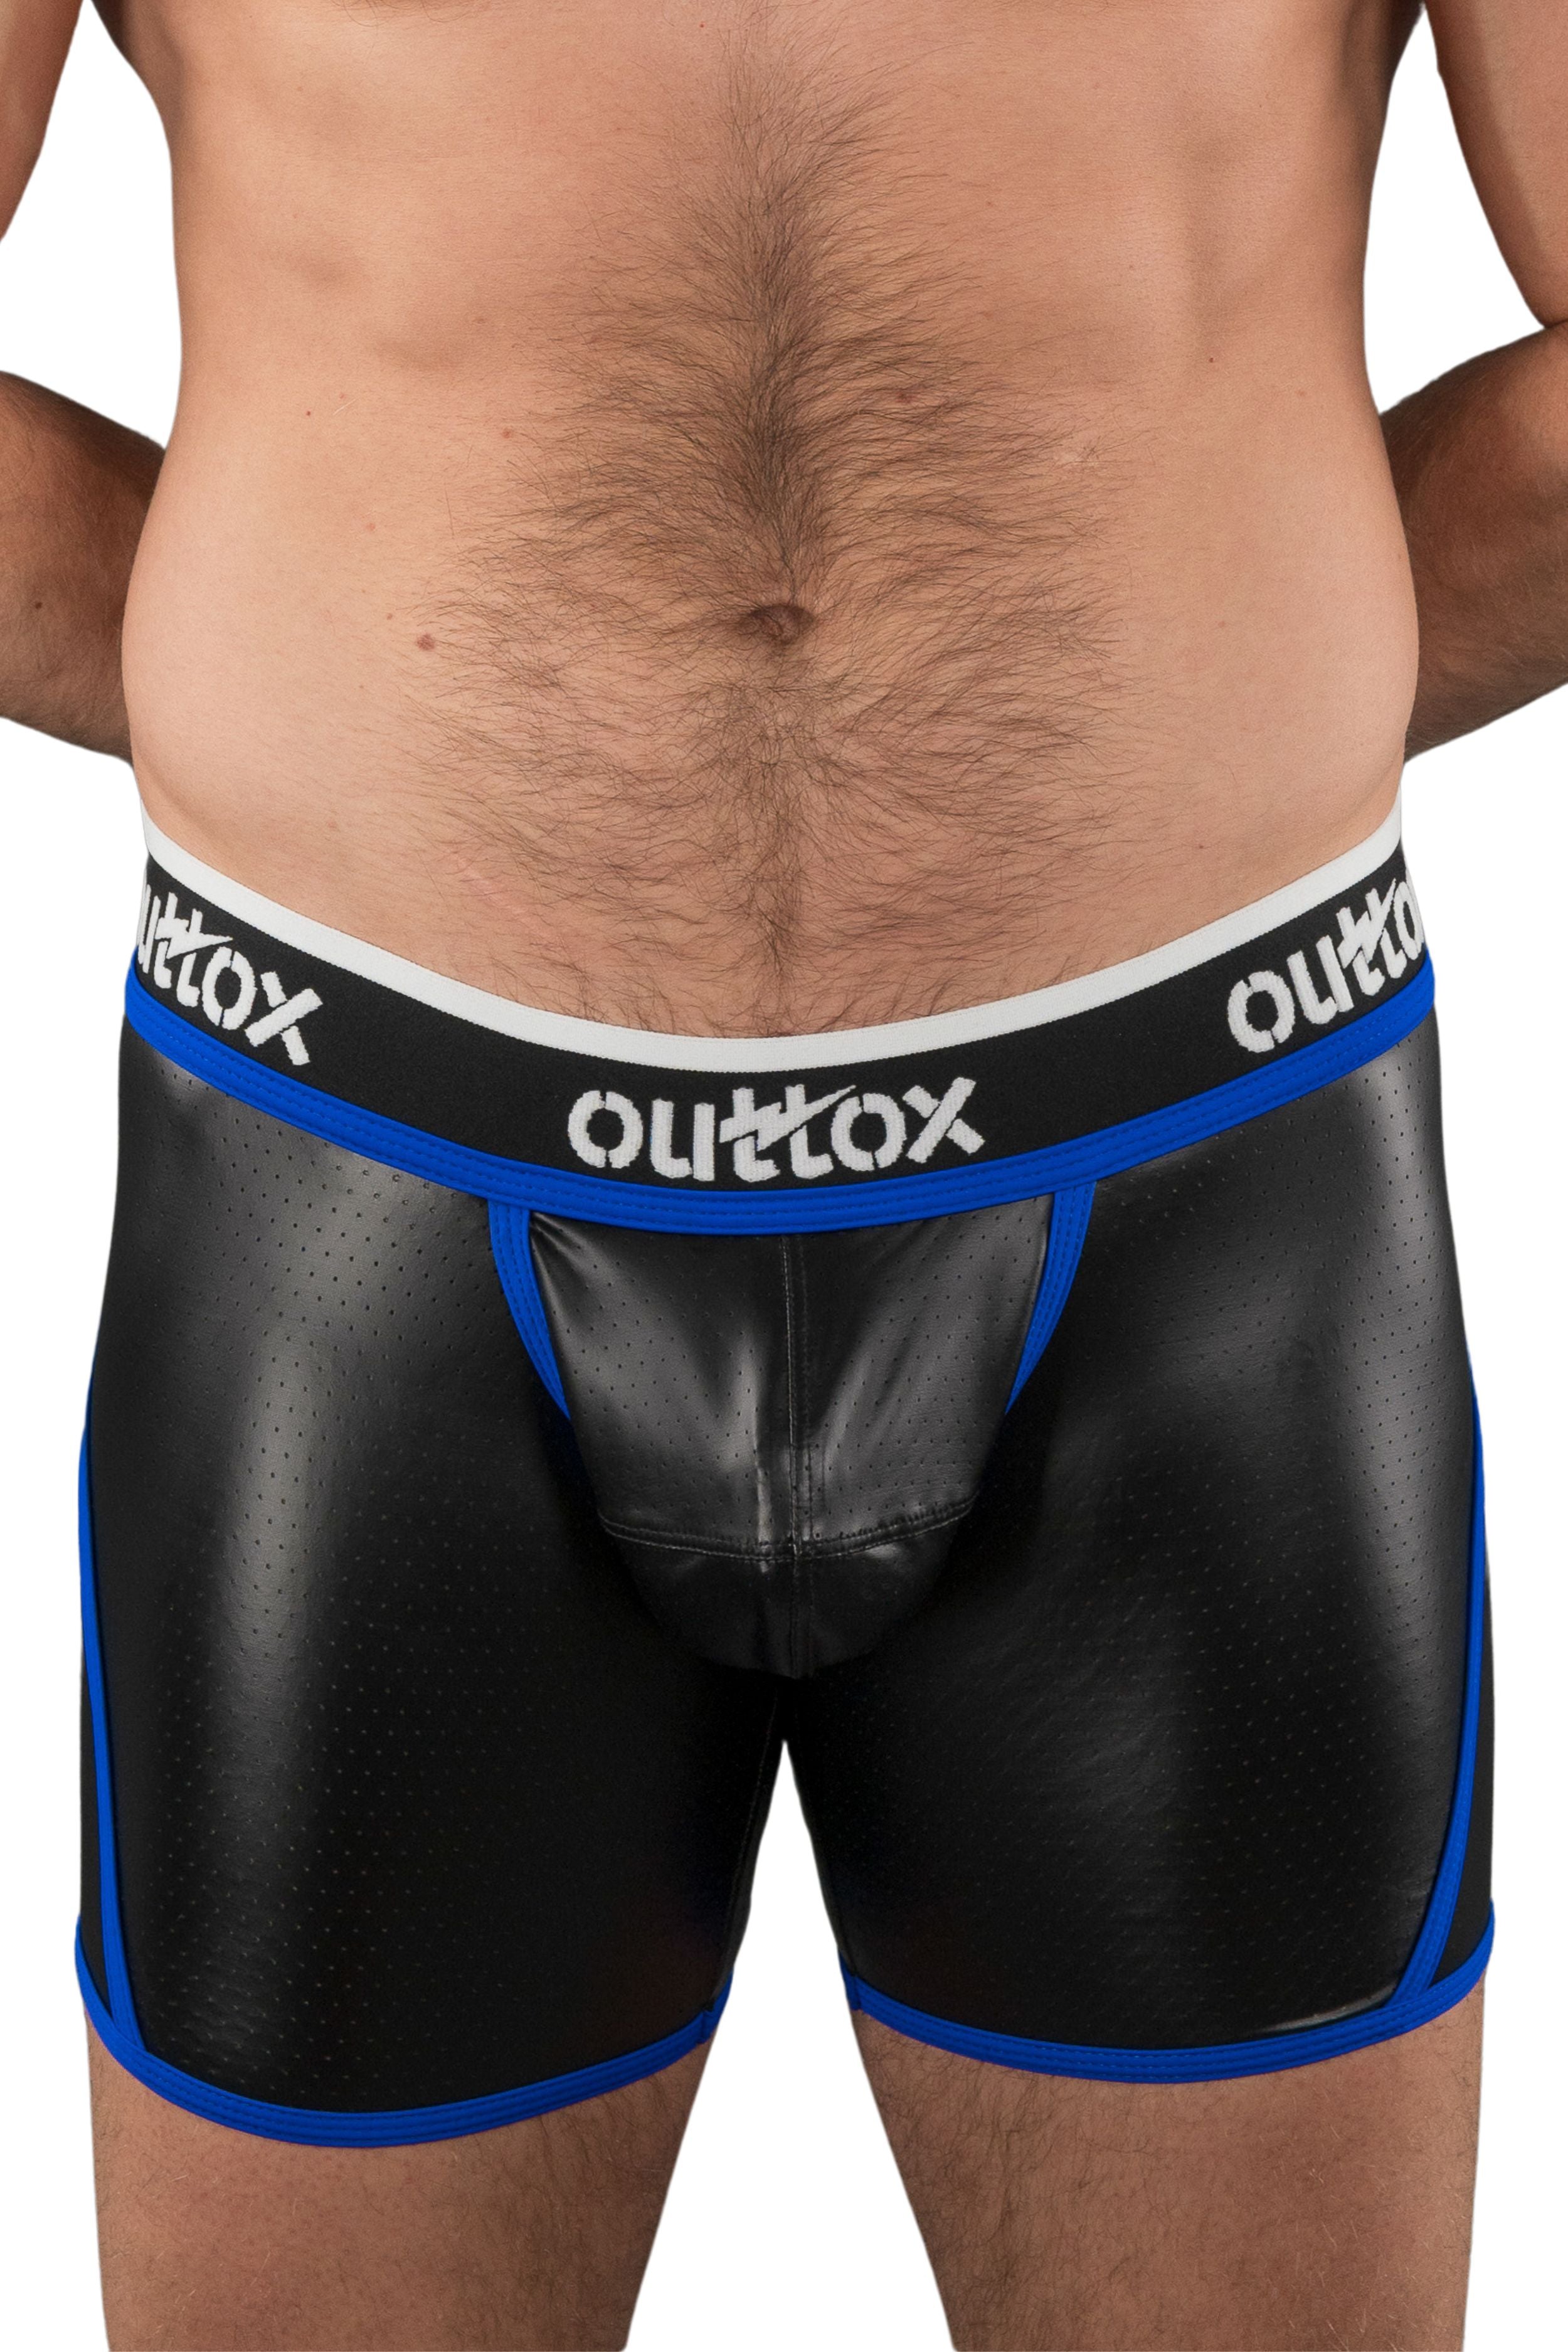 Outtox. Pantalones cortos traseros abiertos con bragueta a presión. Negro+Azul &